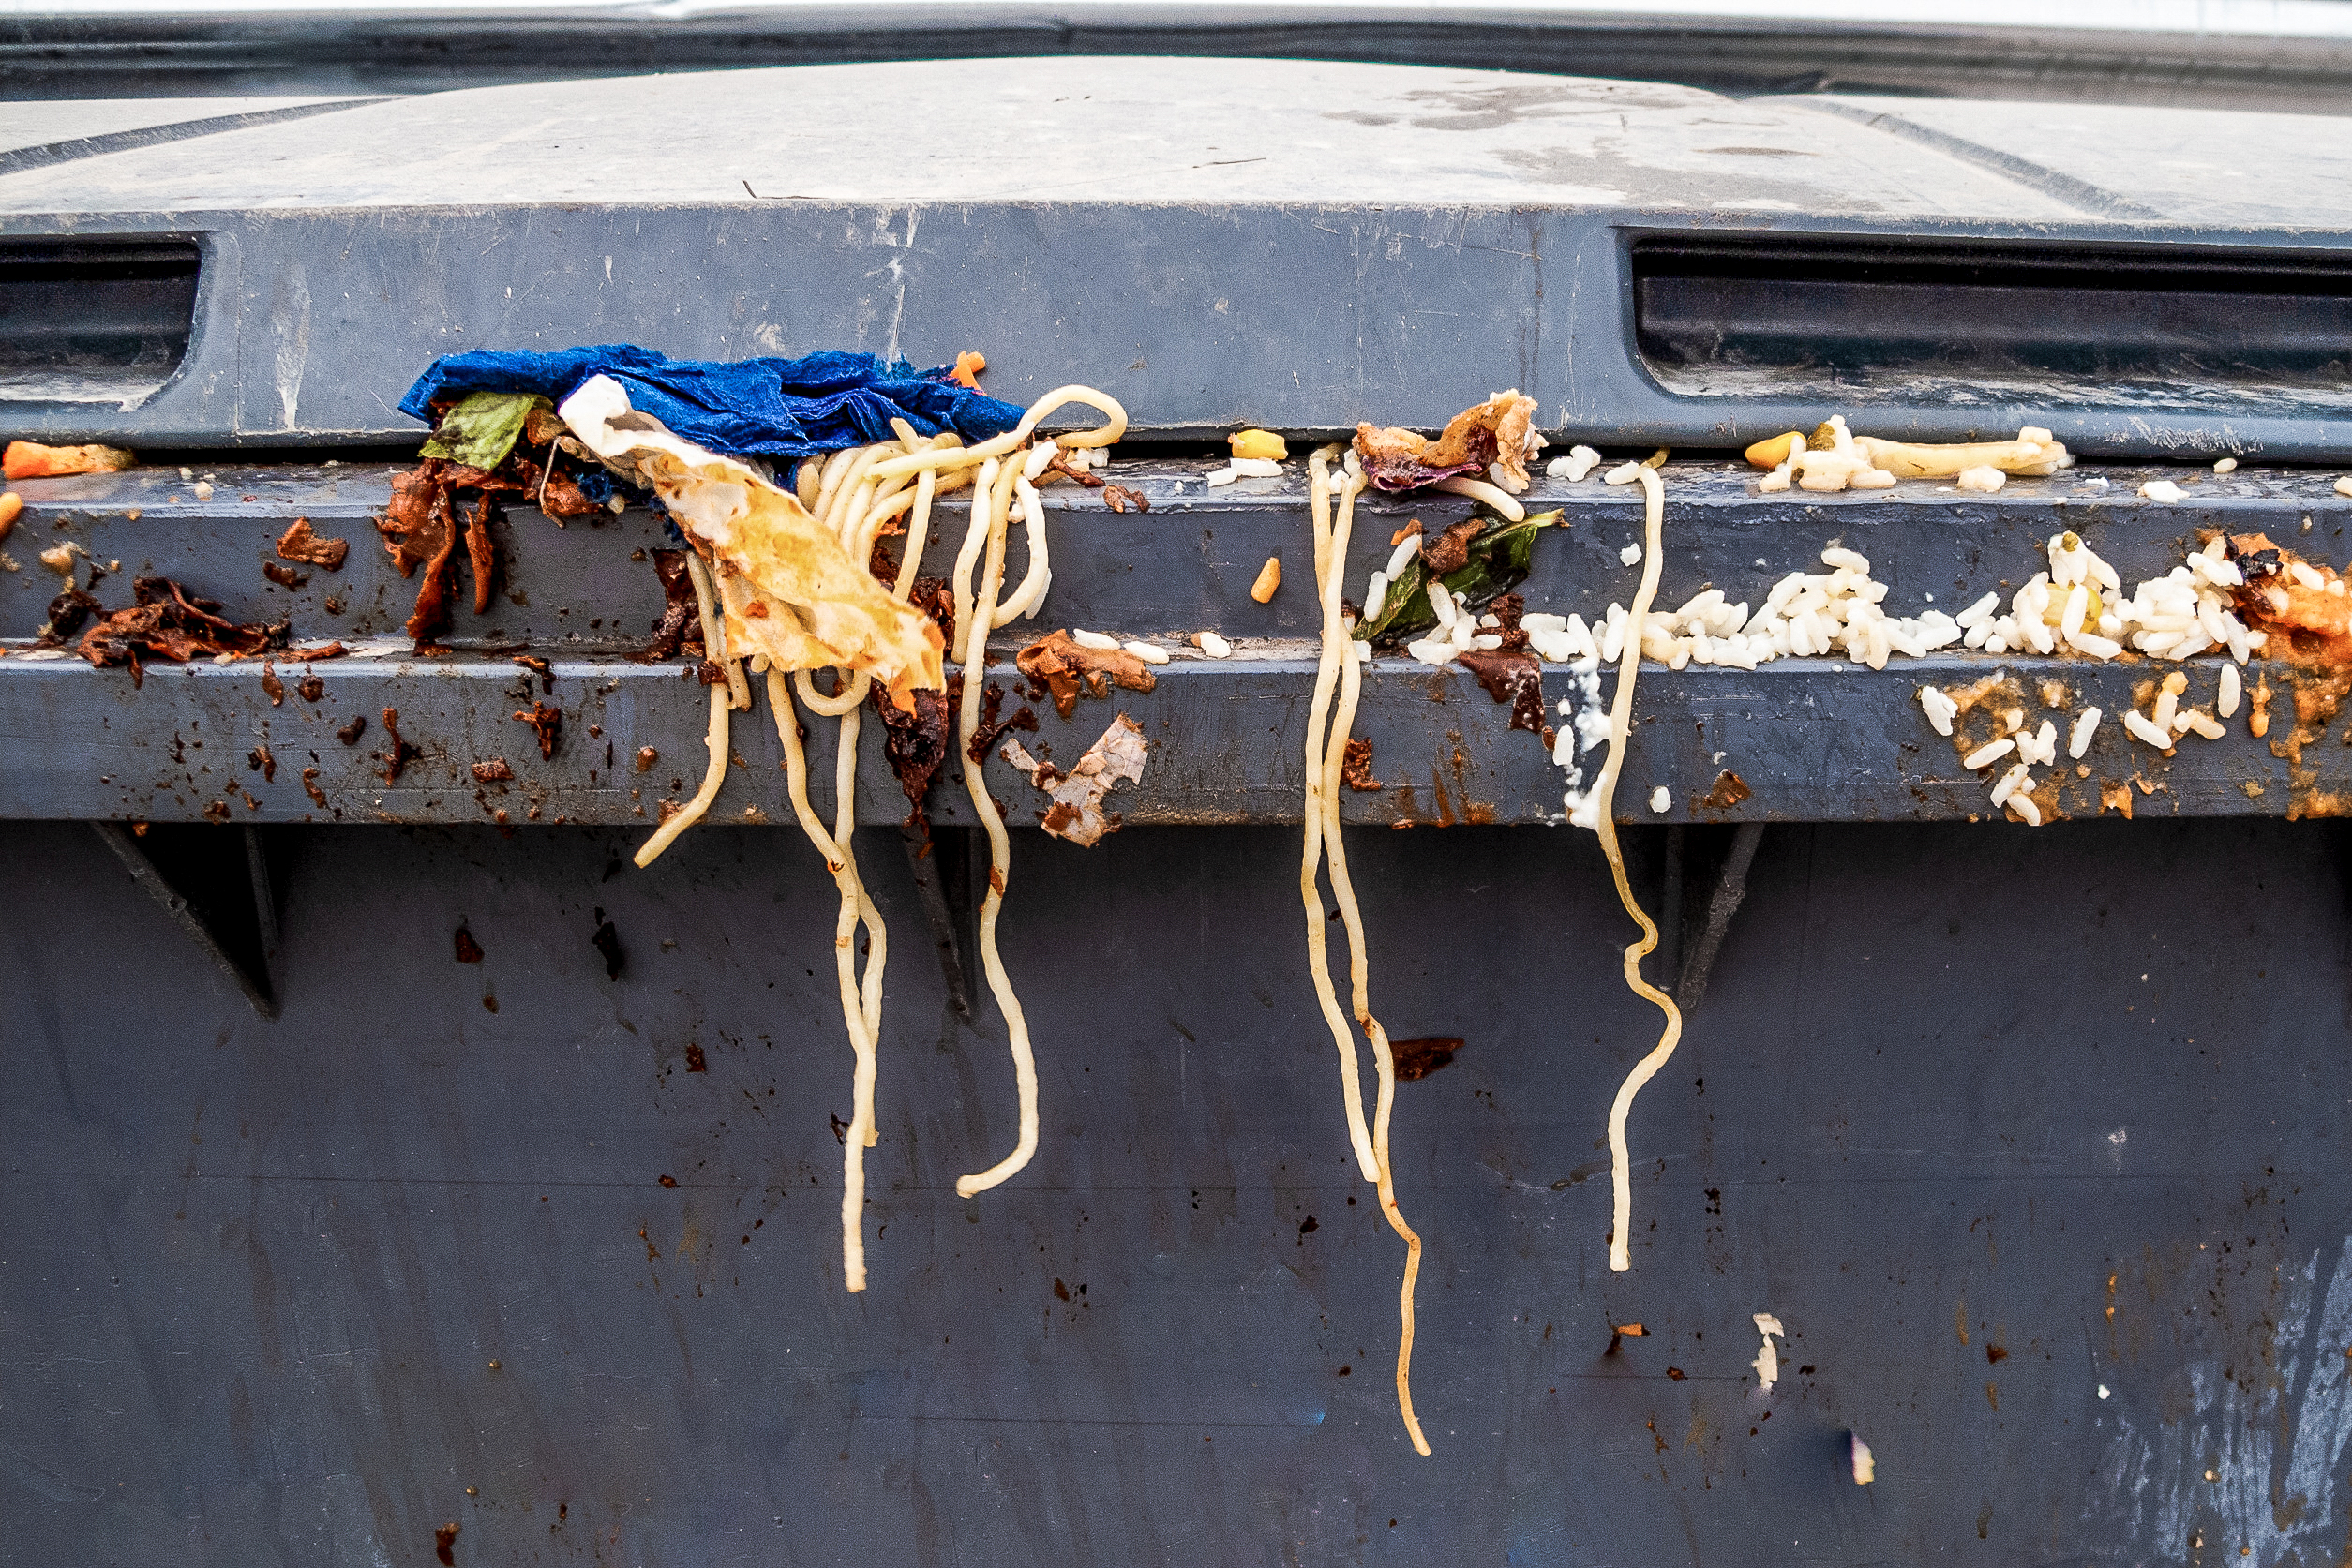 Espaguetis y otros restos de comida en un contenedor gris.